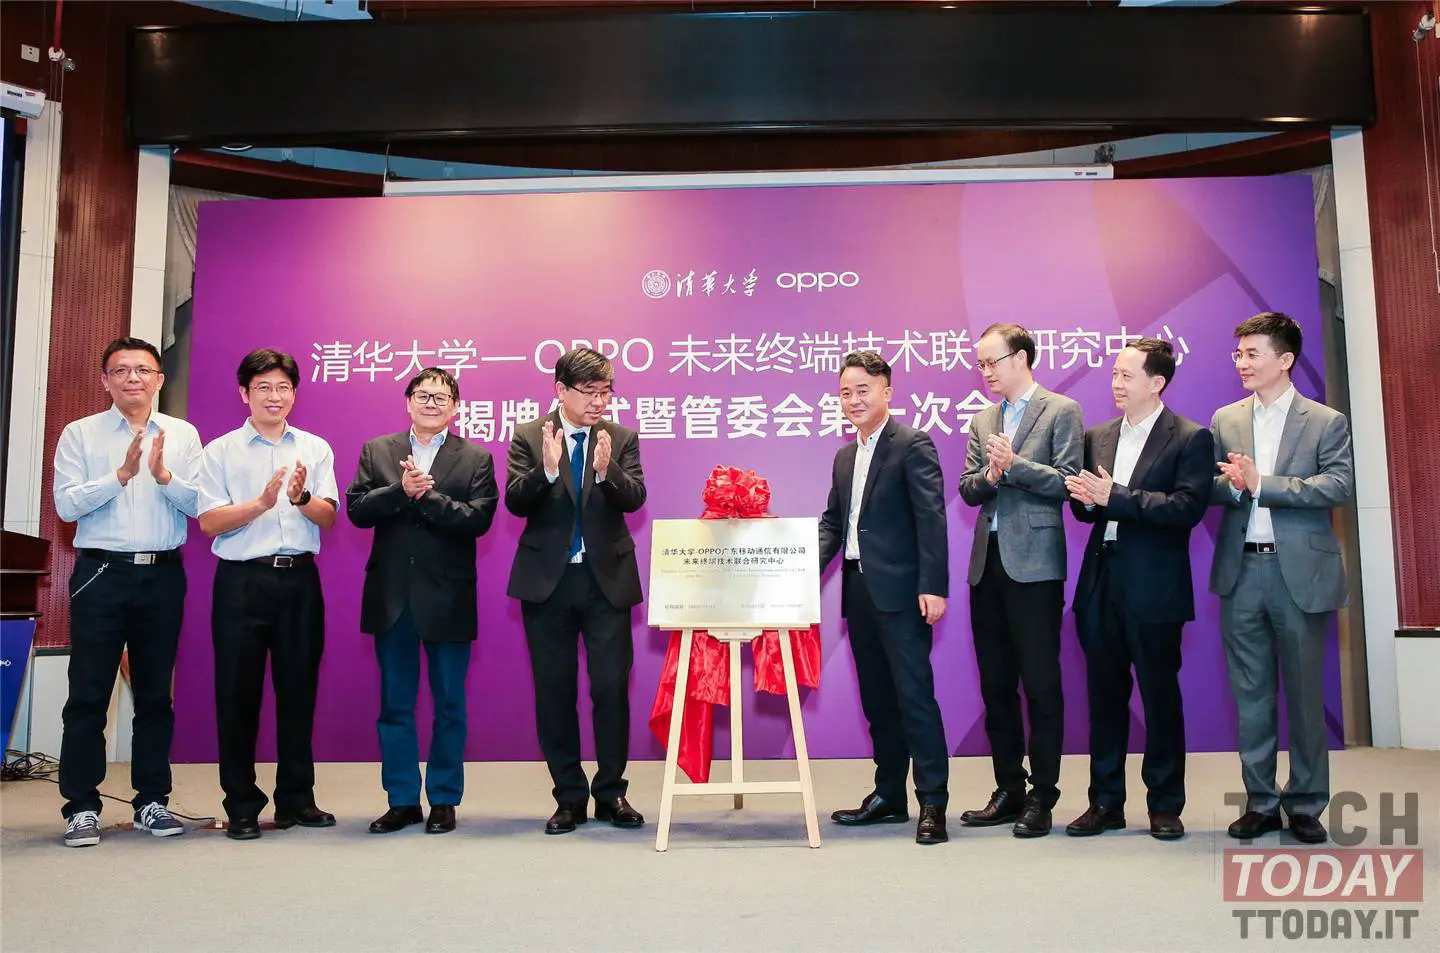 Oppo e Tsinghua University collaborano per l'interazione uomo-macchina